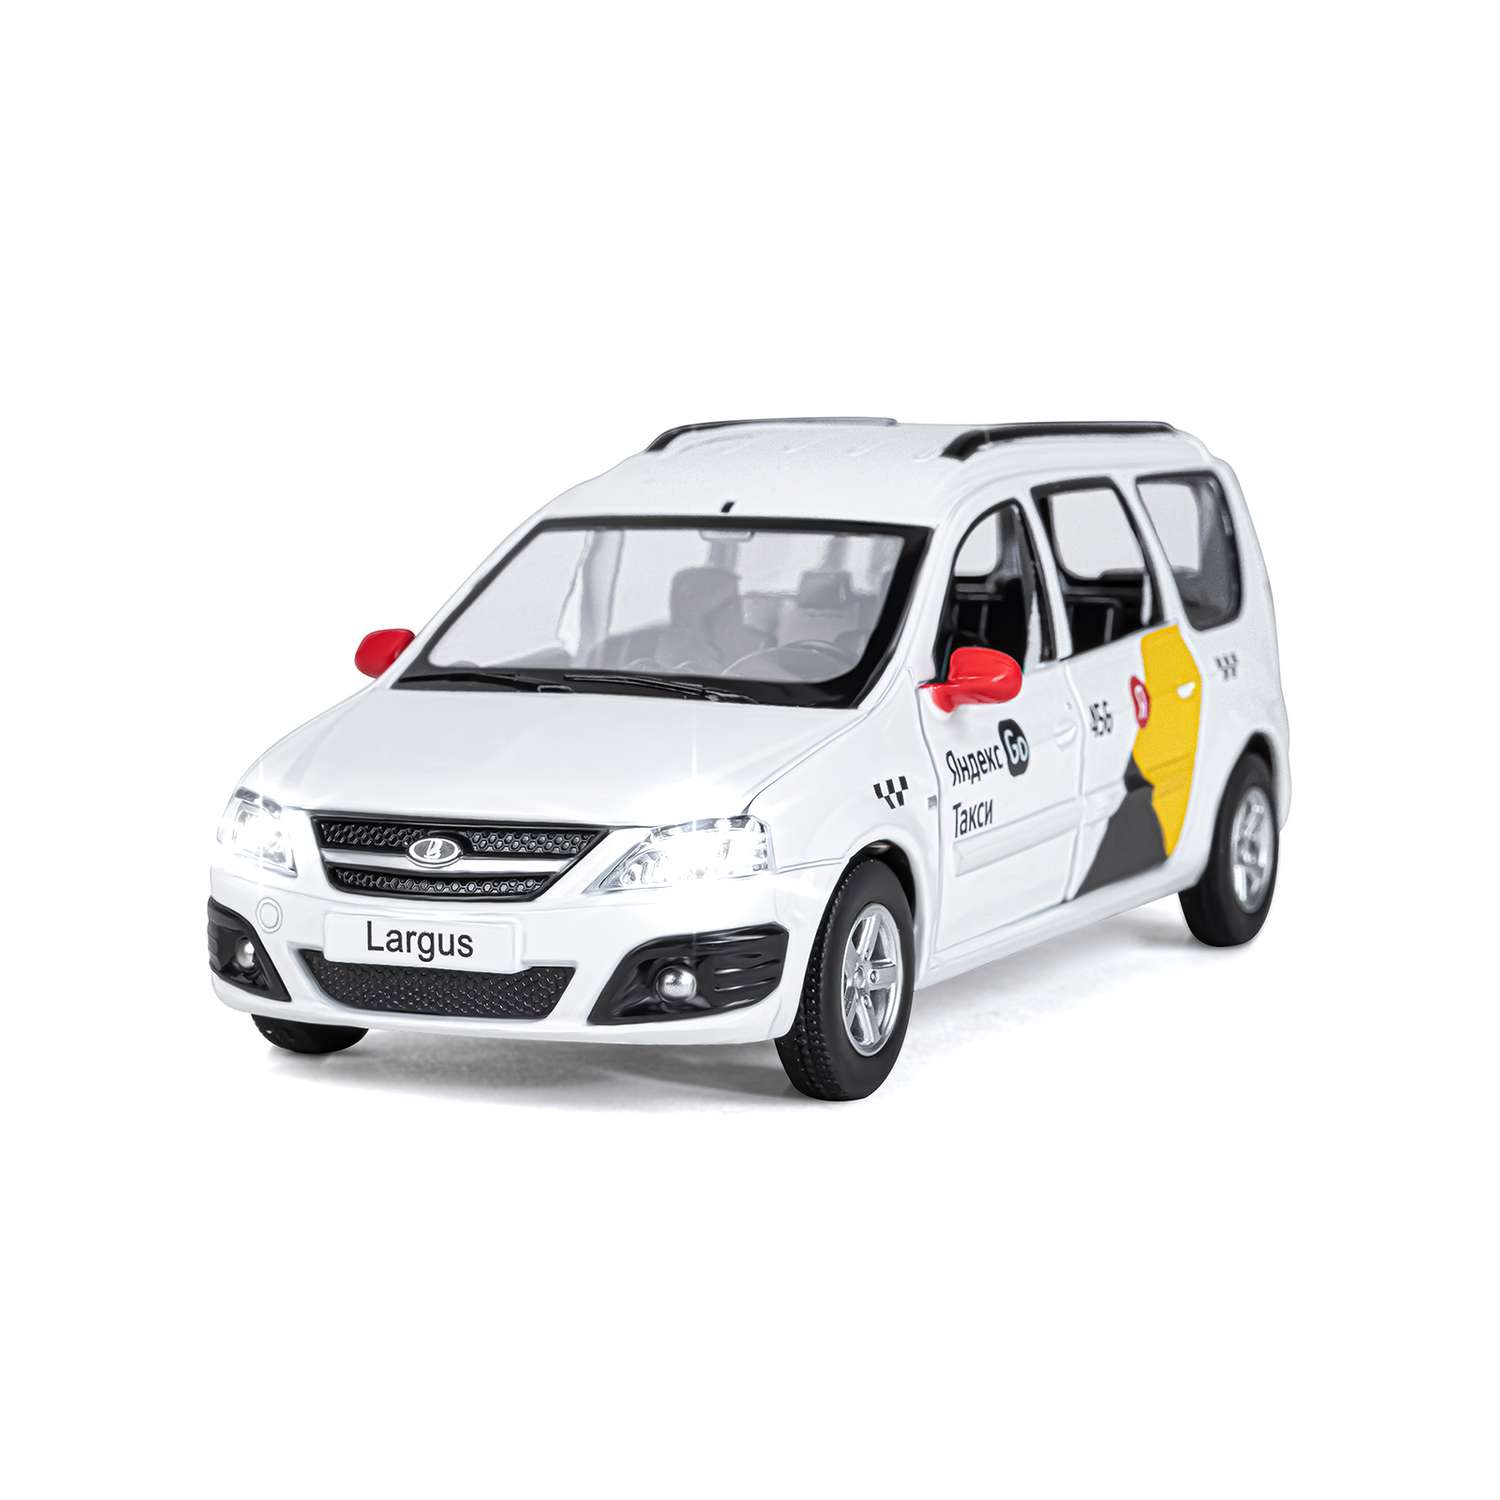 Машинка металлическая Яндекс GO игрушка детская LADA LARGUS 1:24 белый Озвучено Алисой JB1251343/Яндекс GO - фото 9